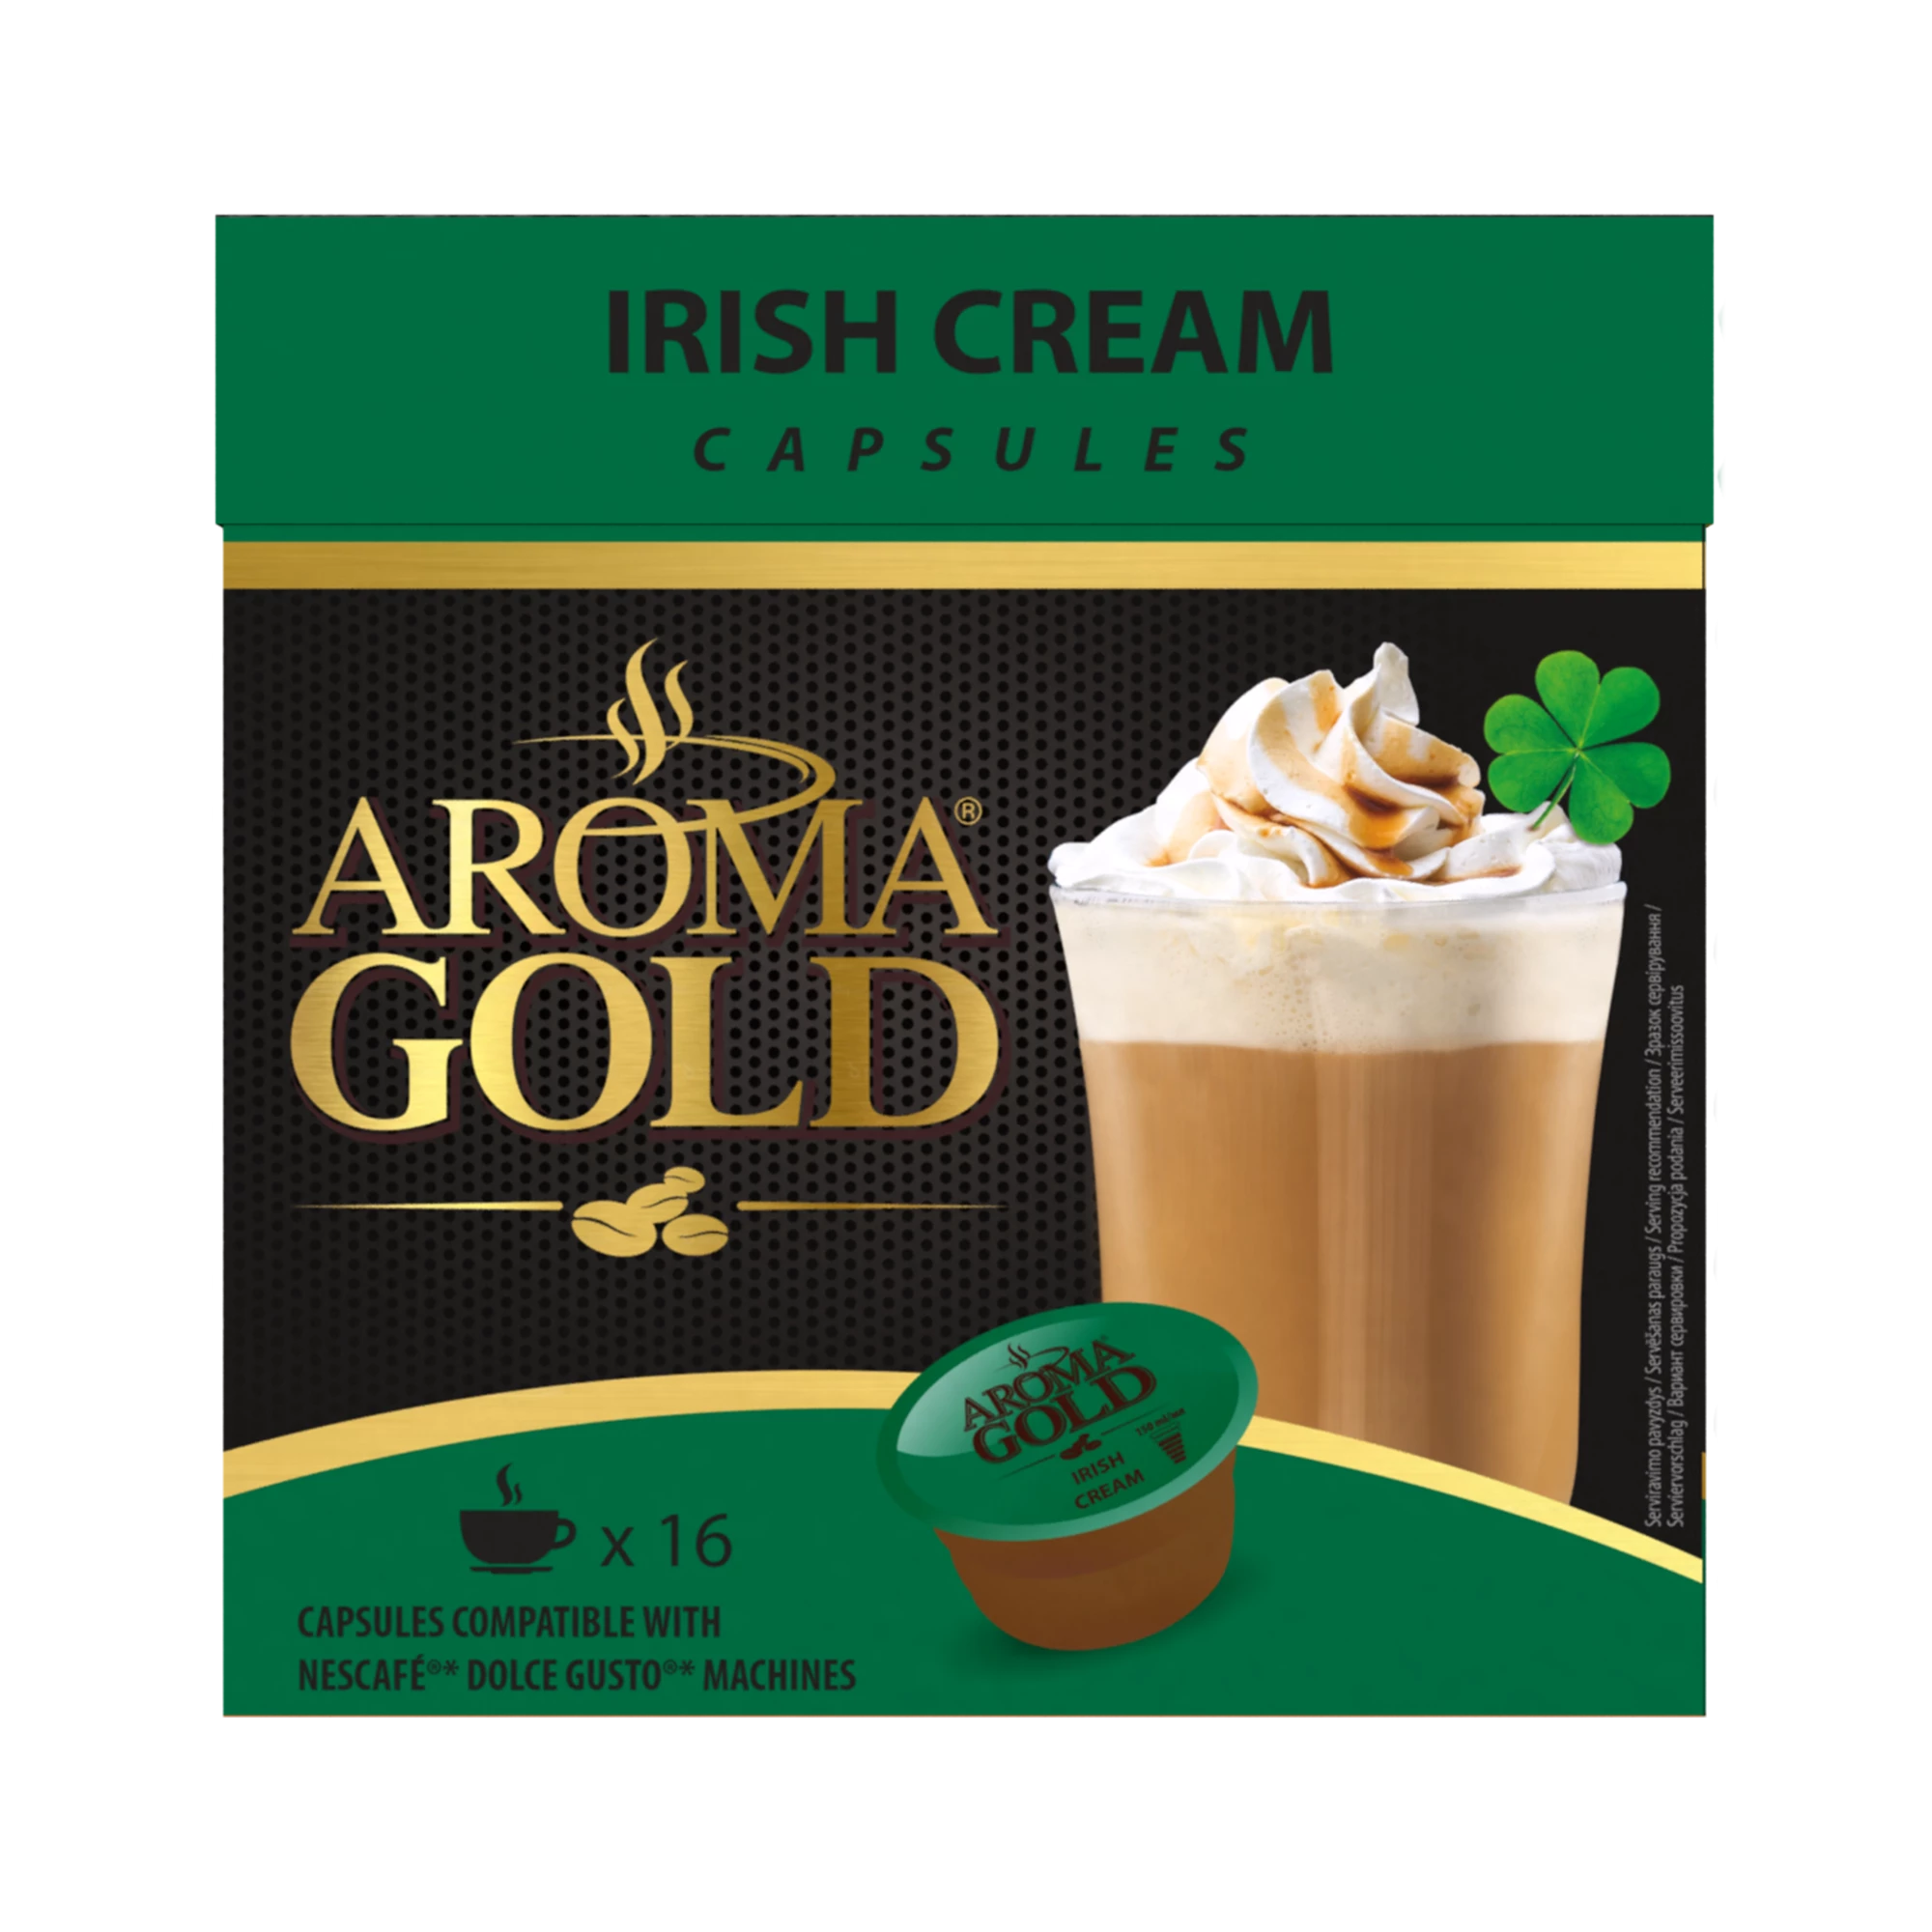 Irish Cream Coffee Compatibile Dolce Gusto X 16 - Aroma Gold